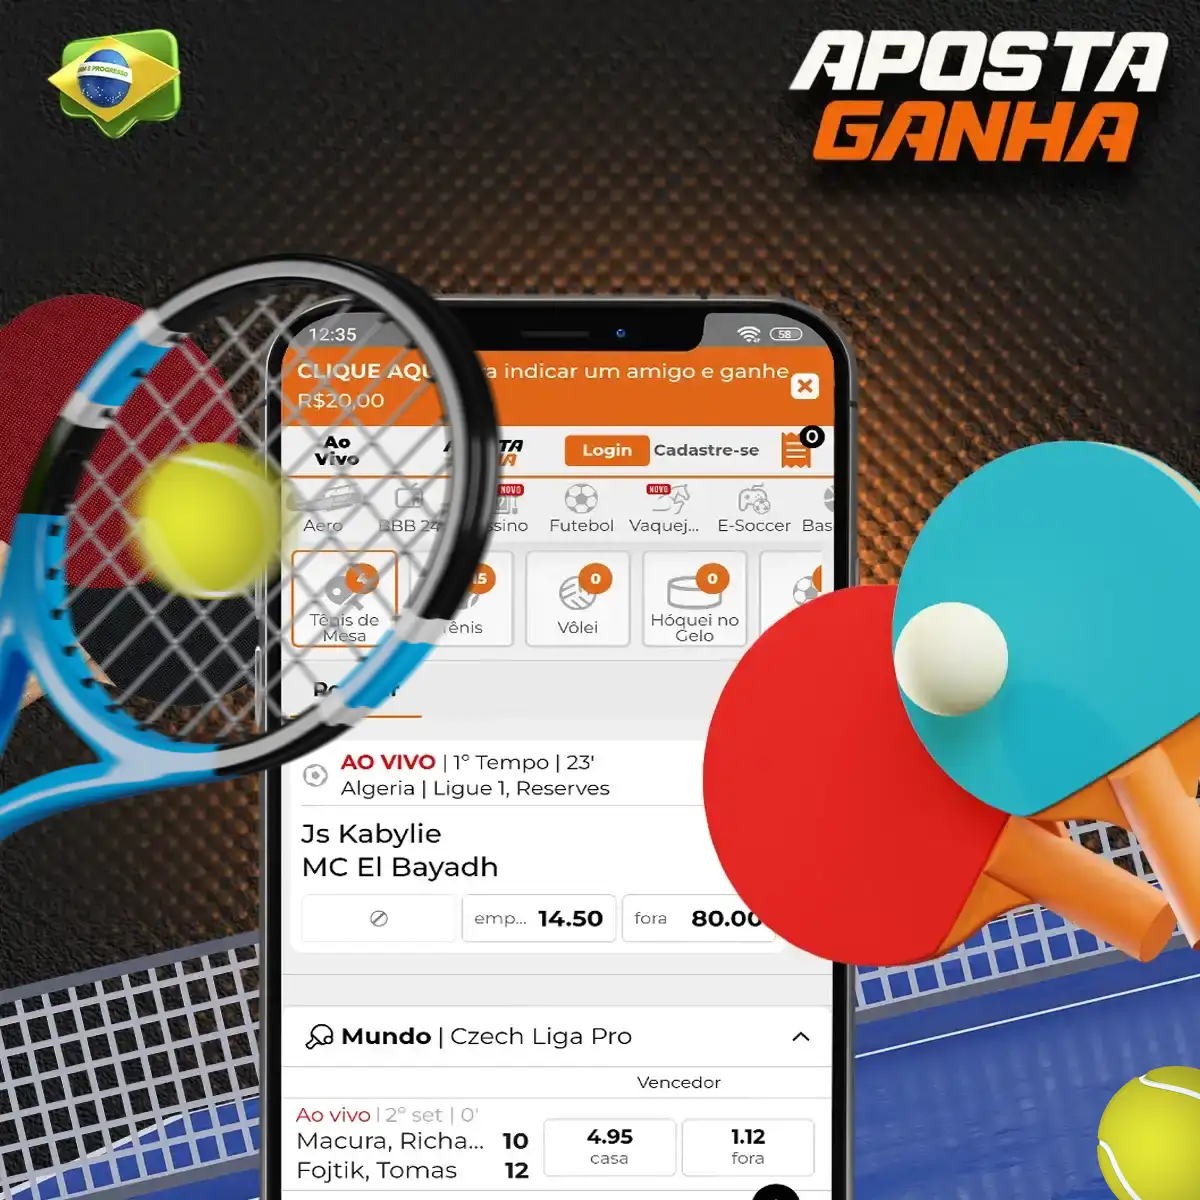 Apostas em tenis na casa de apostas Aposta Ganha no Brasil